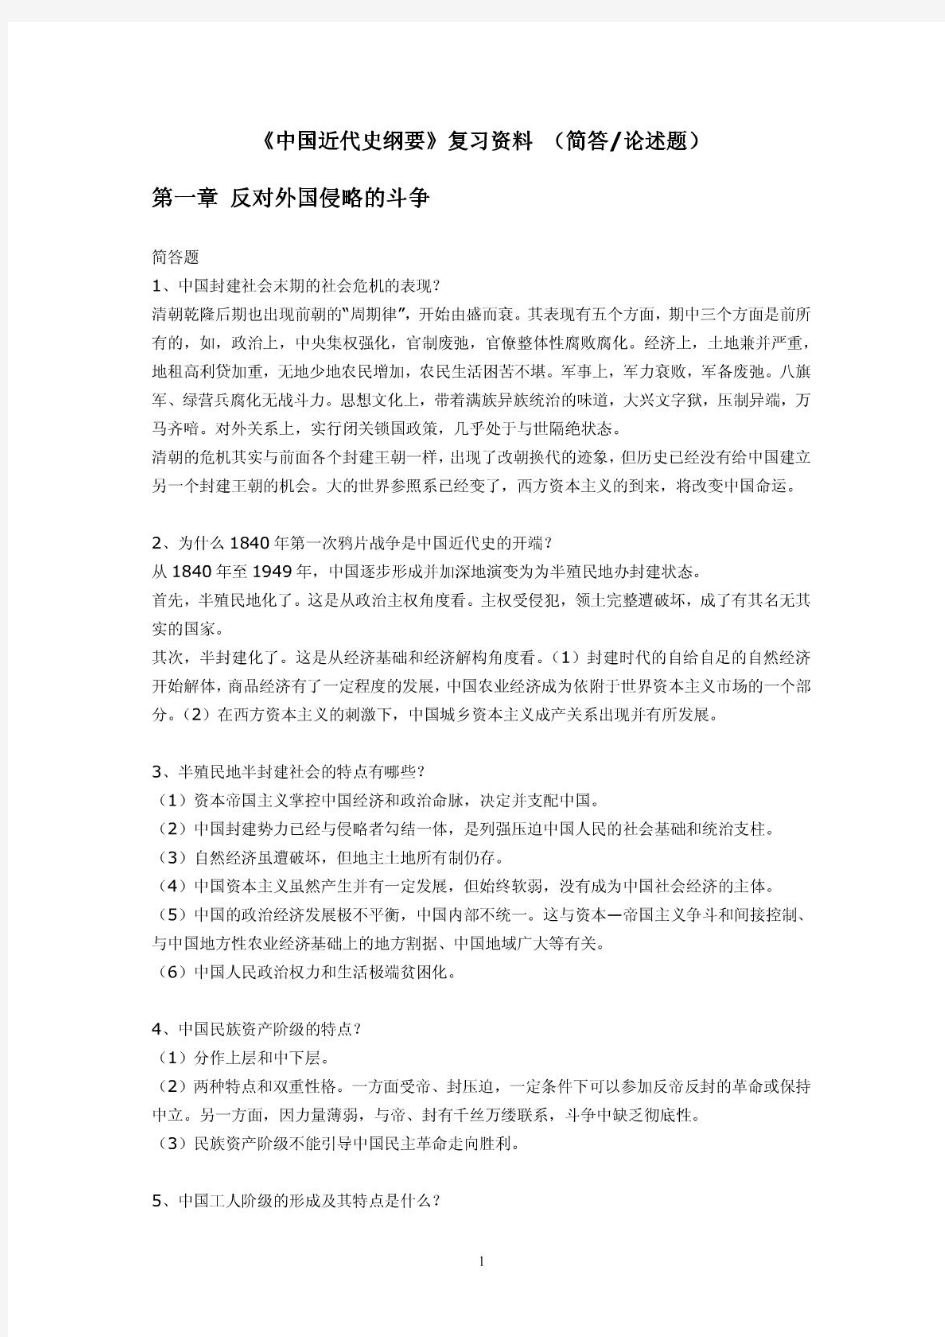 自考《中国近代史纲要》详尽复习笔记.pdf